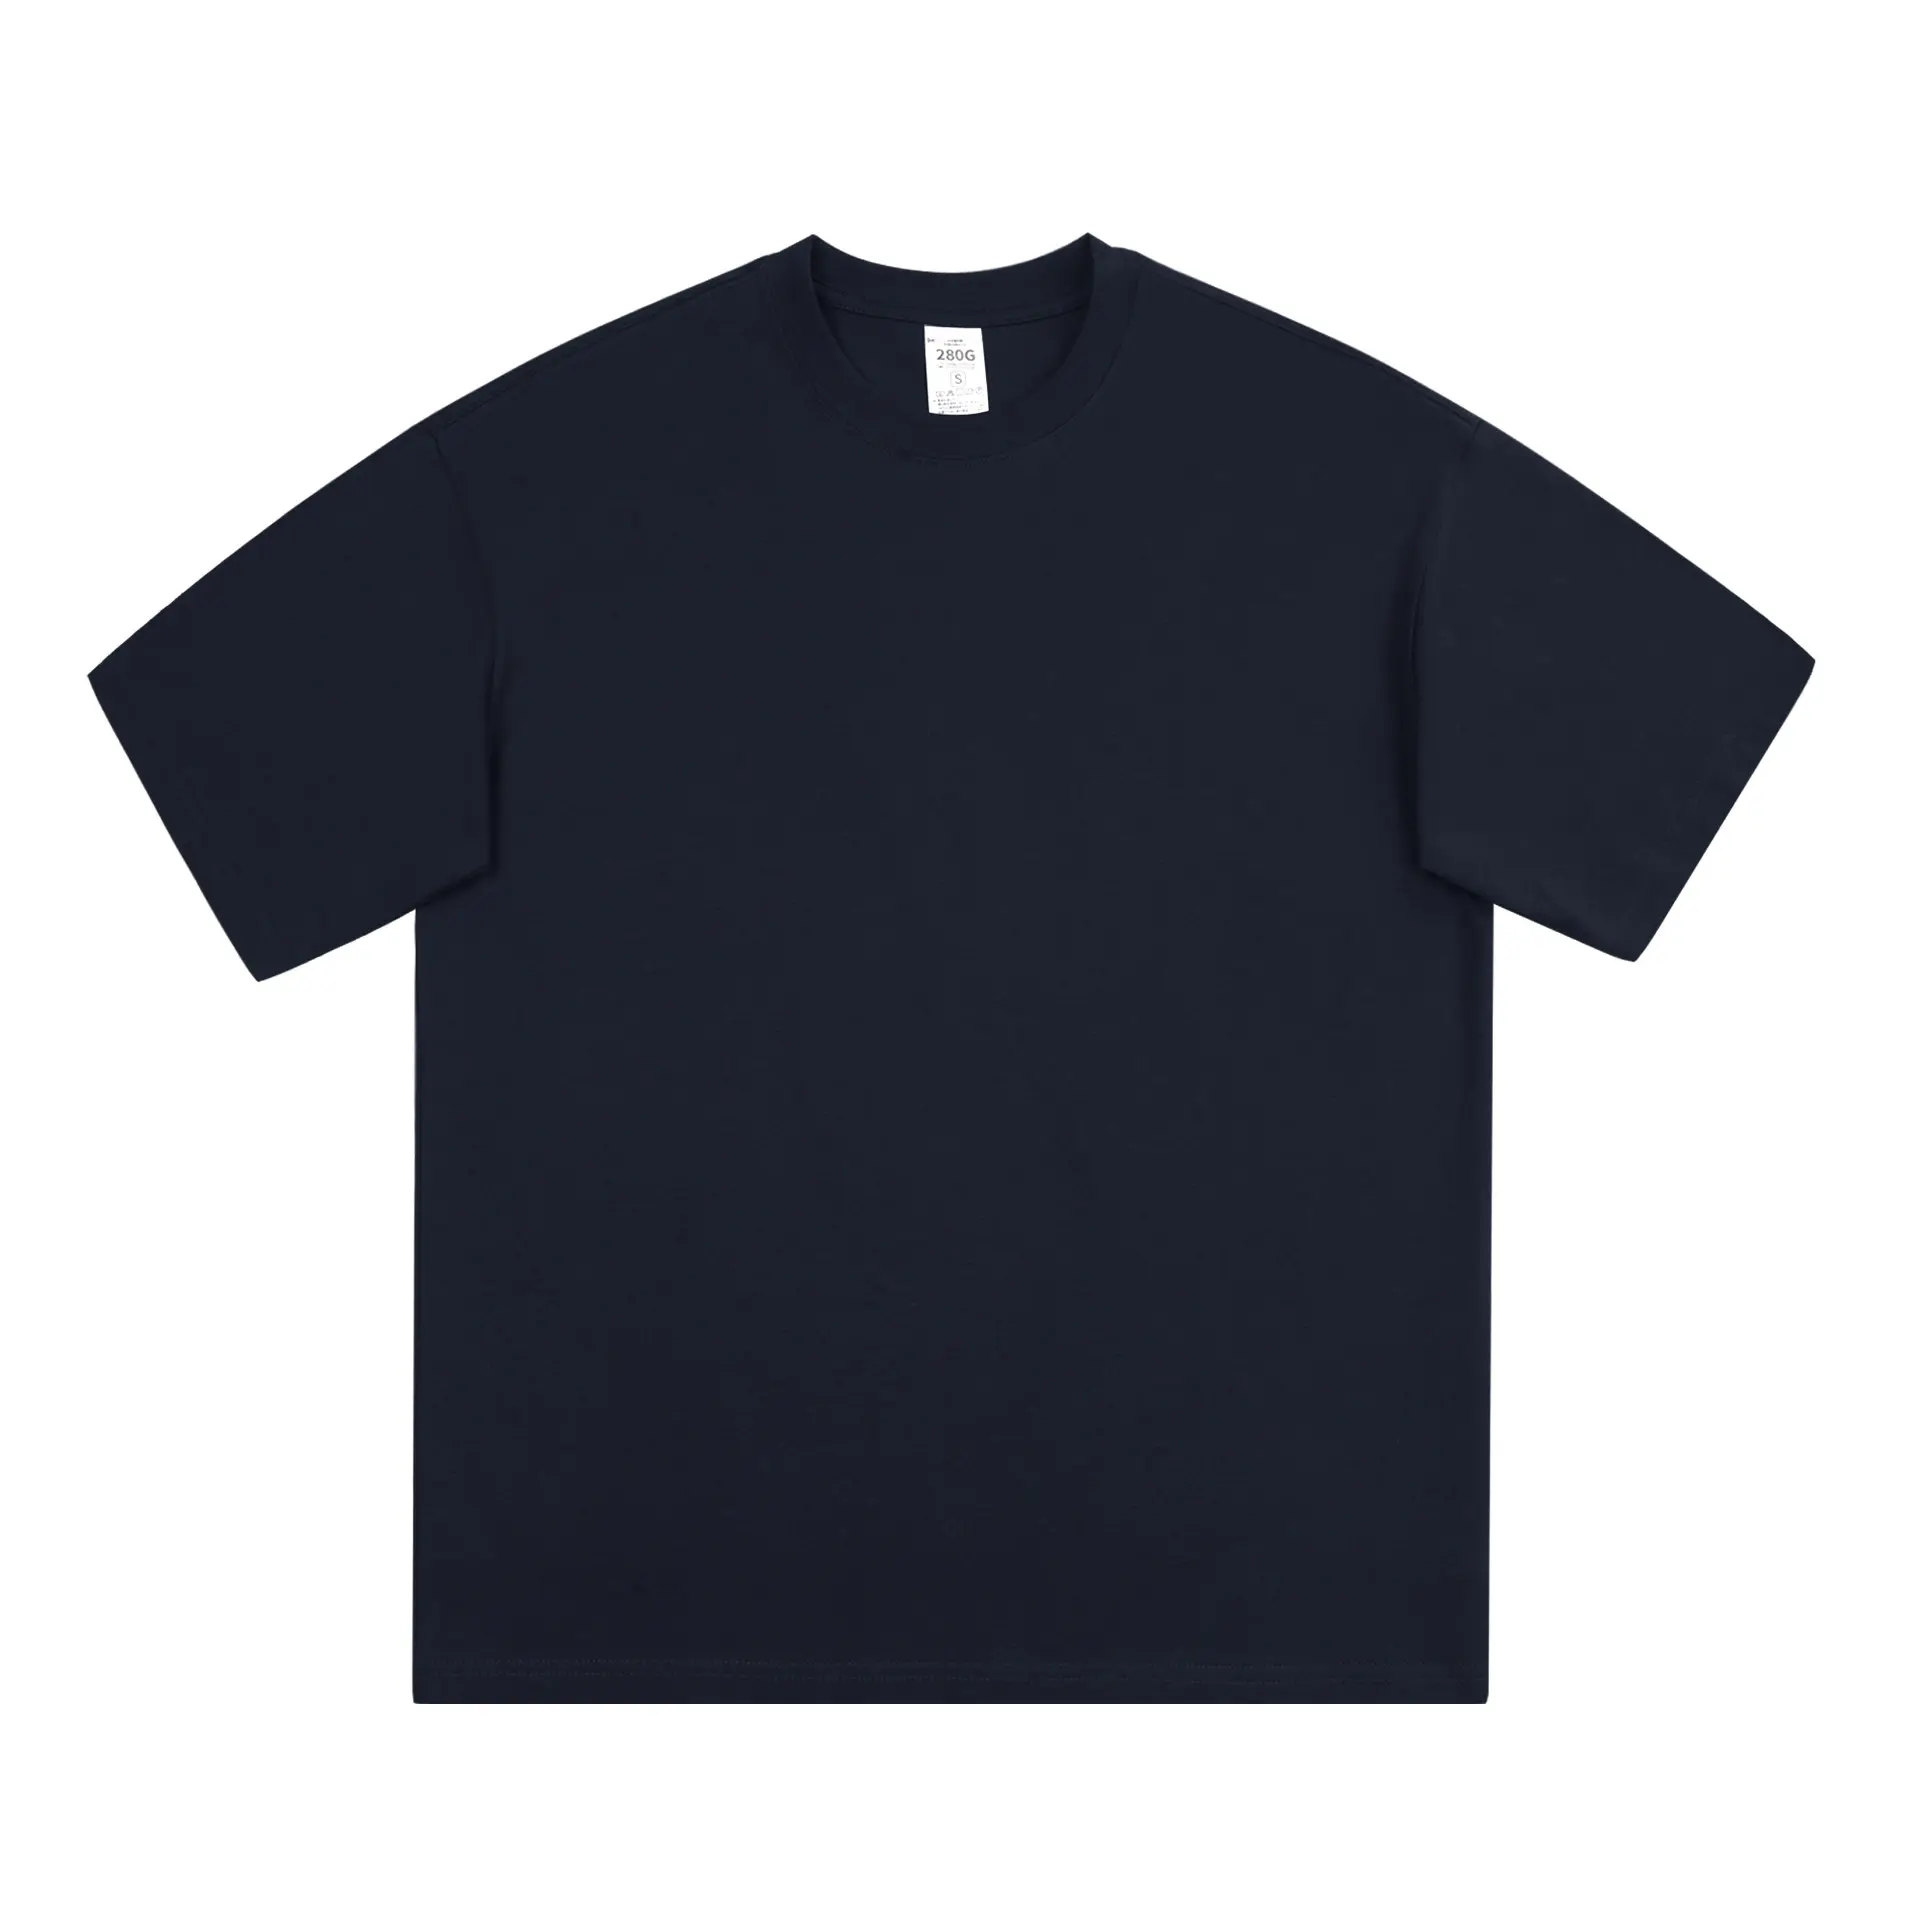 맞춤형 프린트 스트리트웨어 여름 반소매 티셔츠 저렴한 남녀 공용 코튼 플레인 저지 티셔츠 벌크